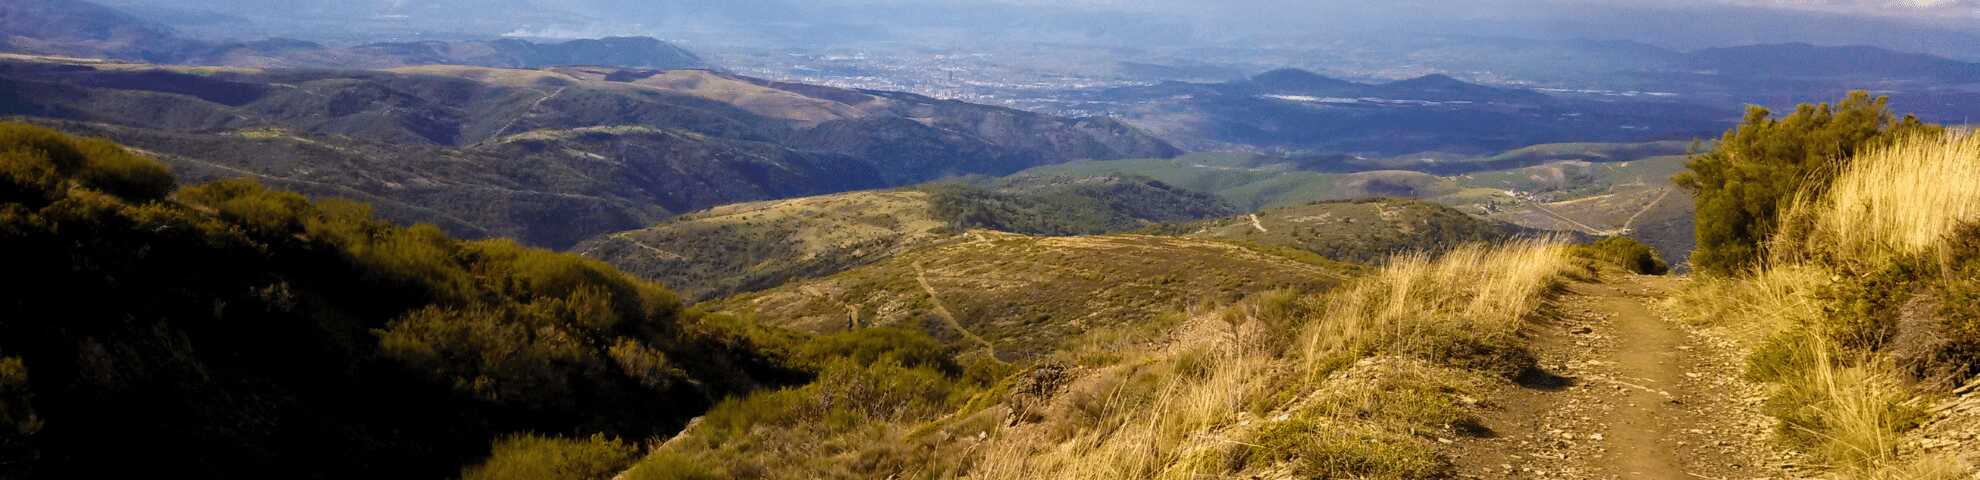 camino-de-santiago-ruta-de-la-plata-etapa-carcaboso-aldea-nueva-del-camino